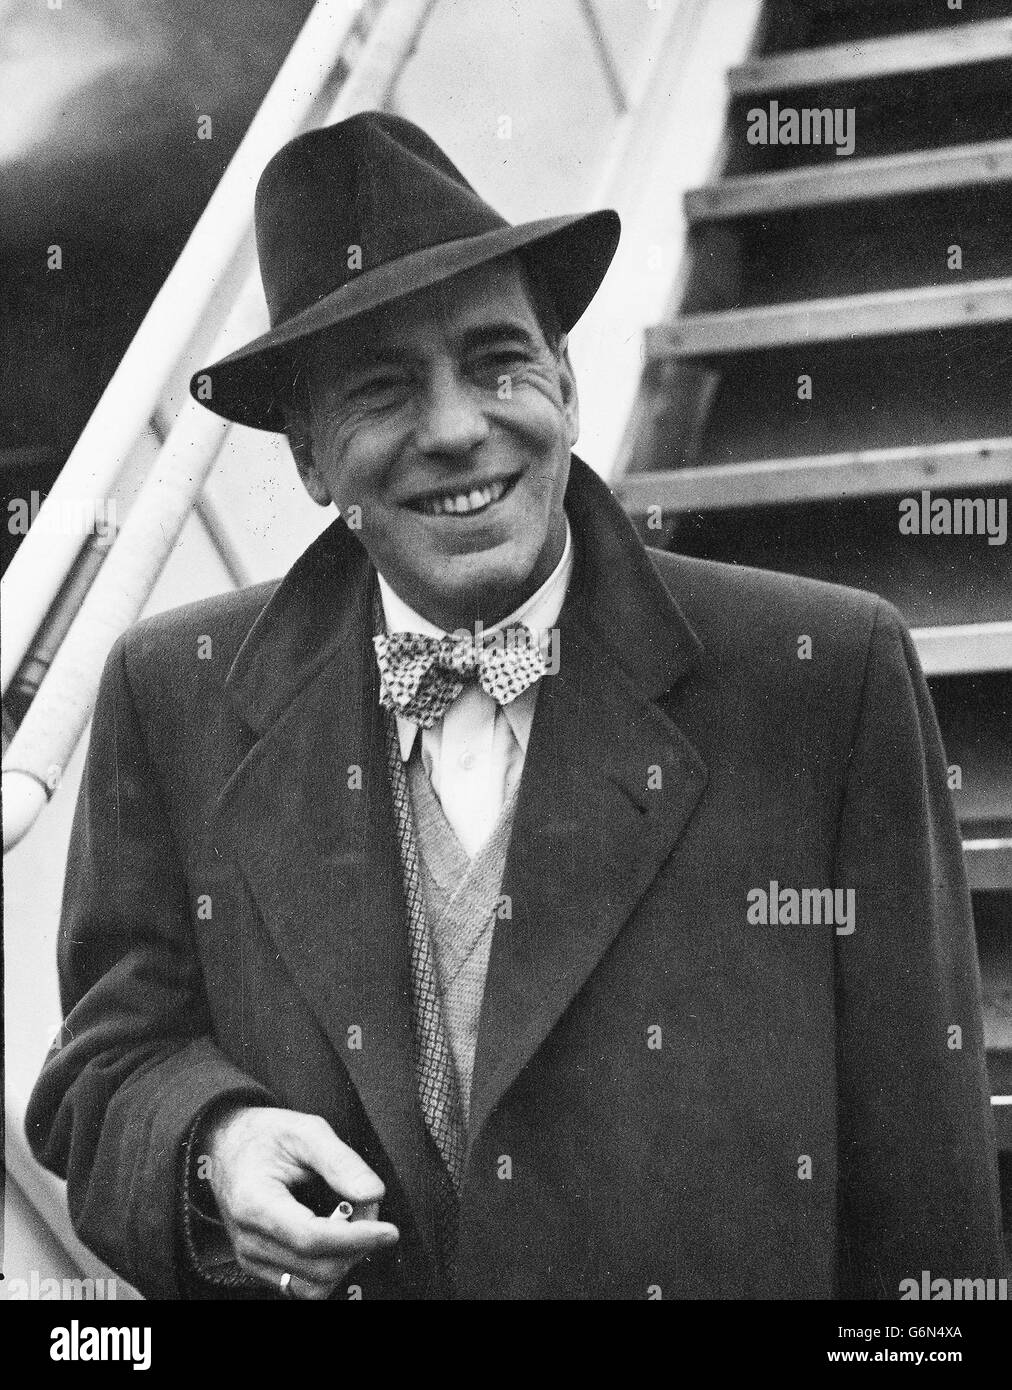 14 janvier - mort ce jour - 1957 acteur américain emblématique, Humphrey Bogart Banque D'Images